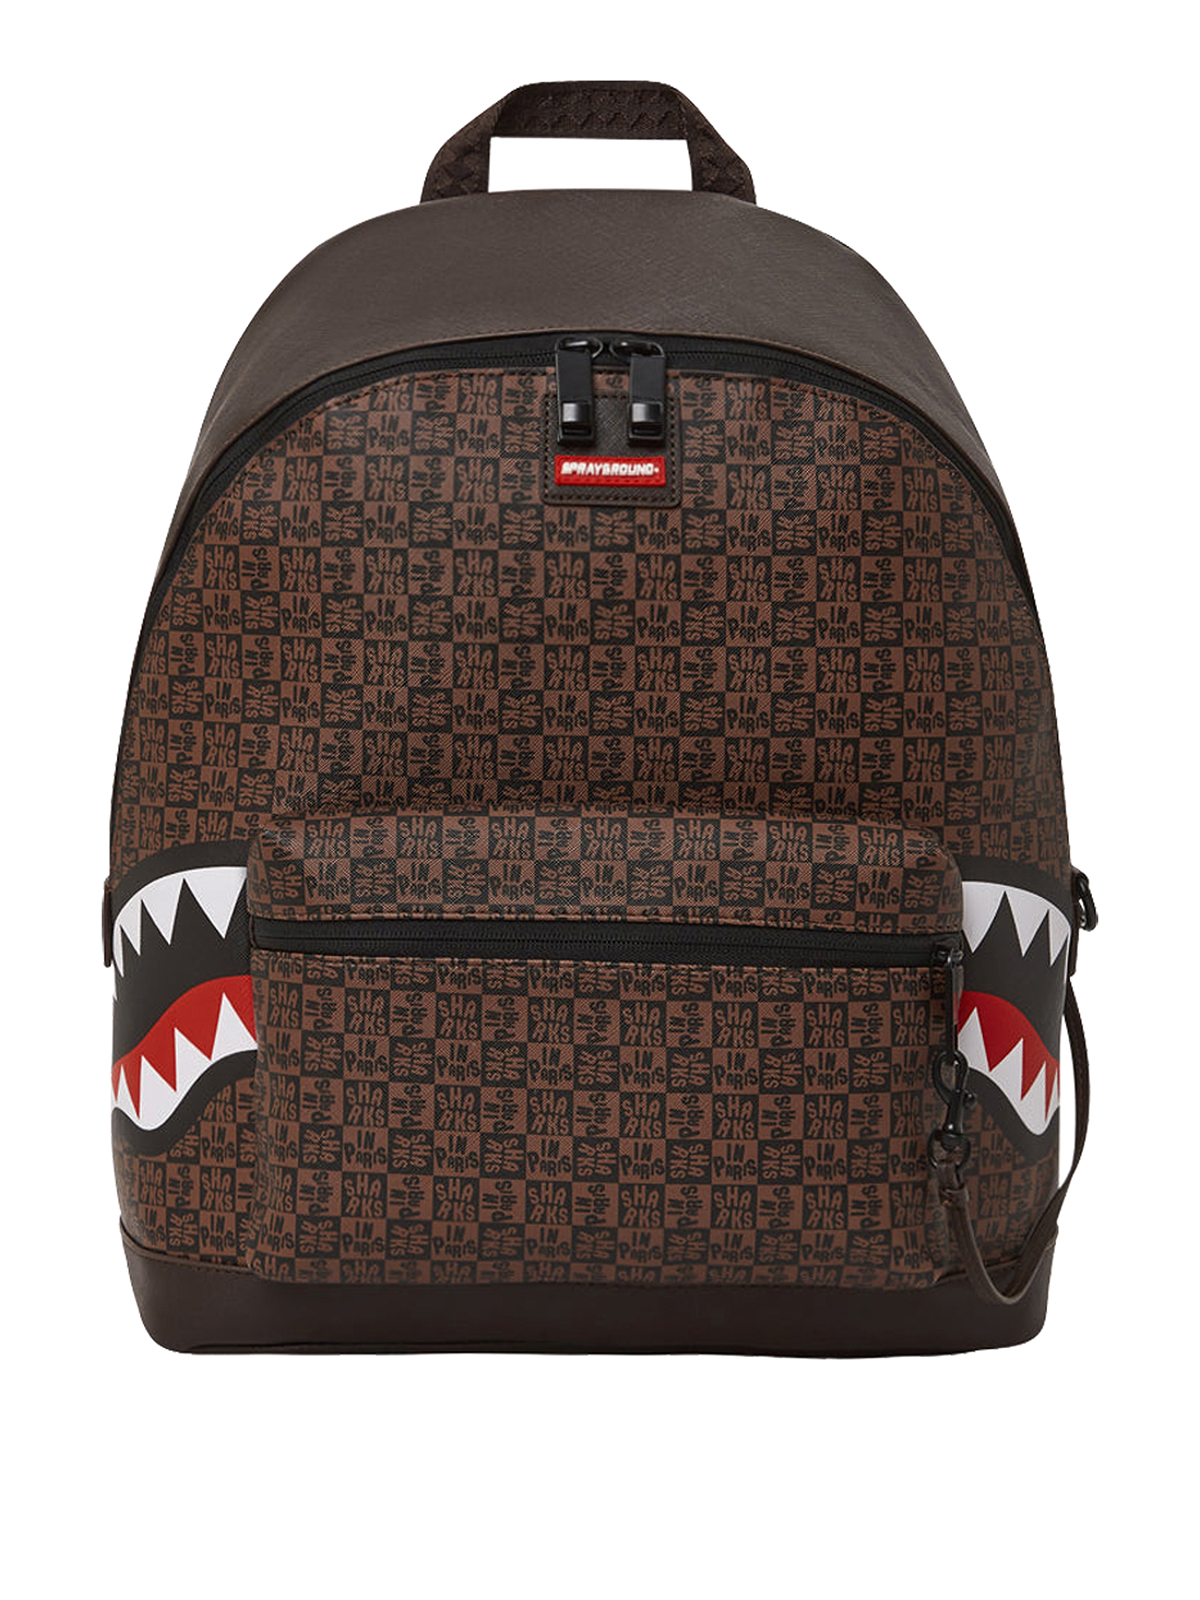 Backpacks Sprayground - Shark in Paris backpack in brown and black